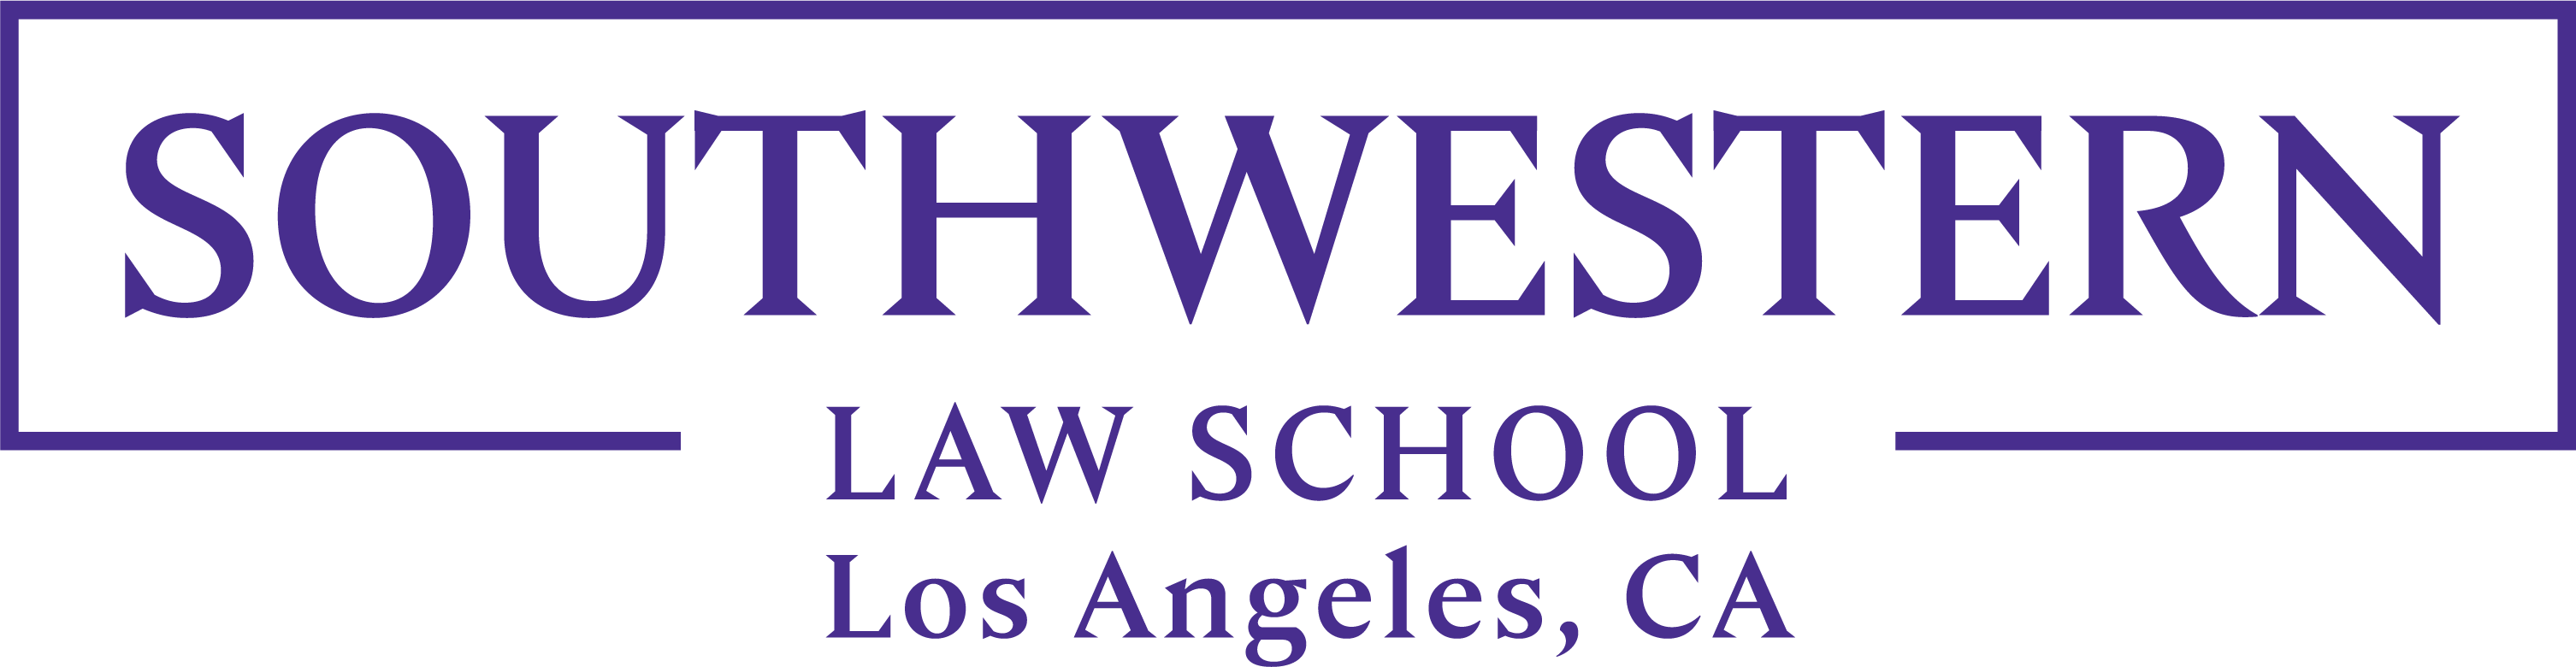 2023 Southwestern Law School Logo in Purple